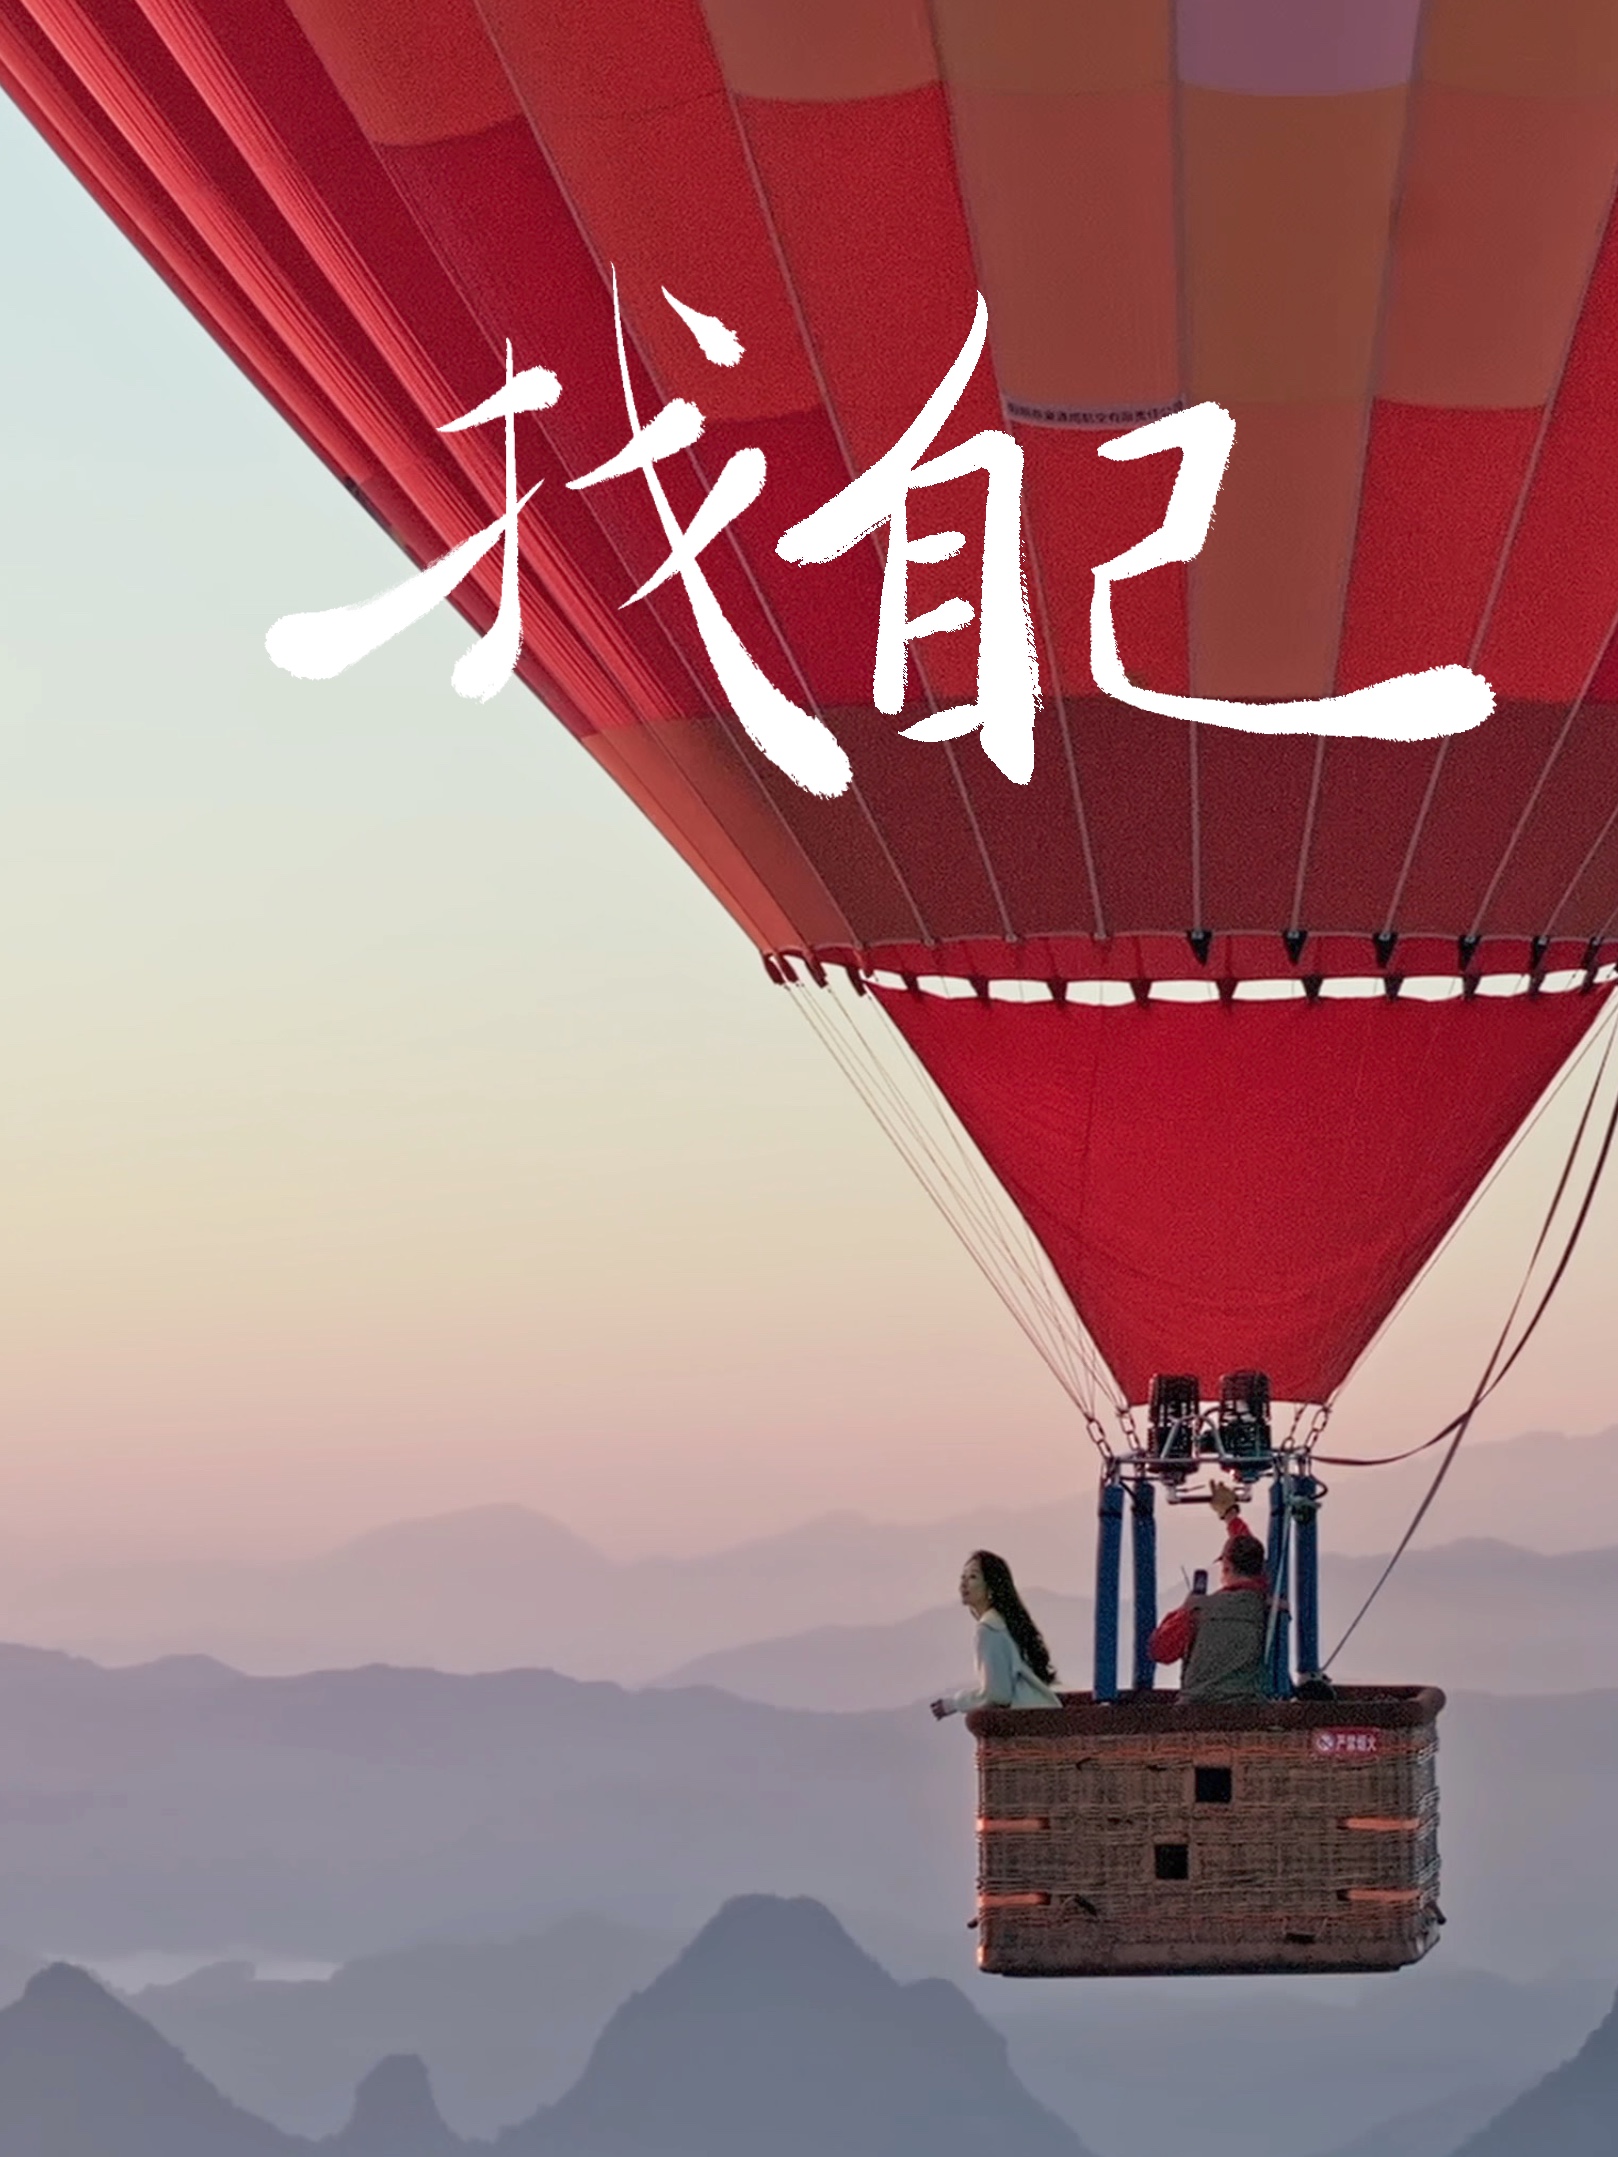 找不到答案的时候，去桂林坐热气球看山海